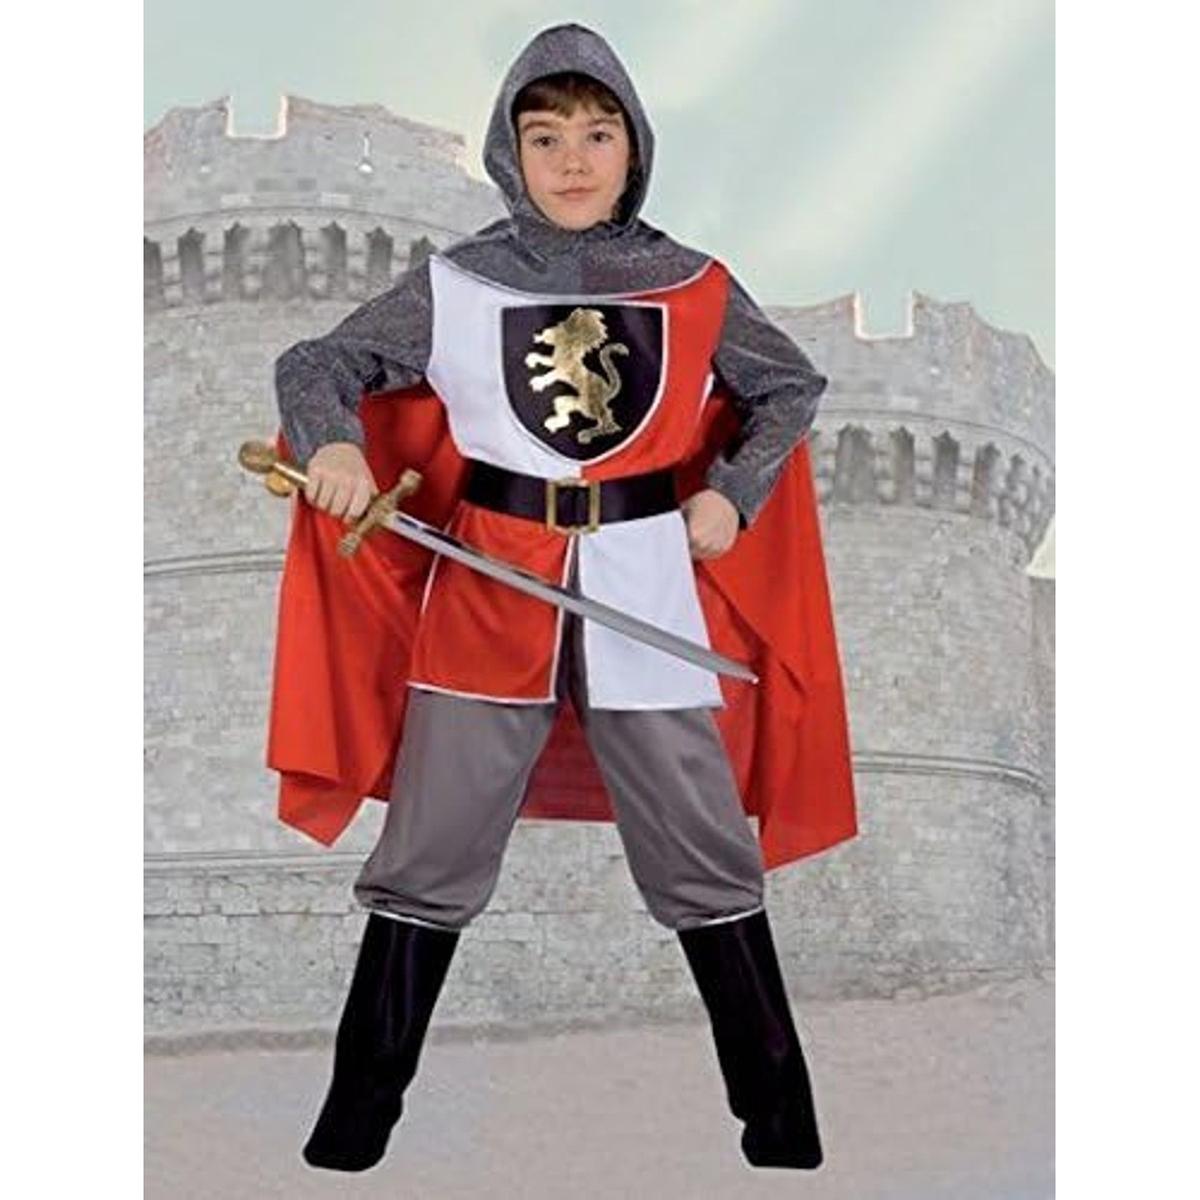 Fantasia de Cavaleiro Medieval Infantil M | Halloween disfarce criança |  Loja de brinquedos e videojogos Online Toysrus